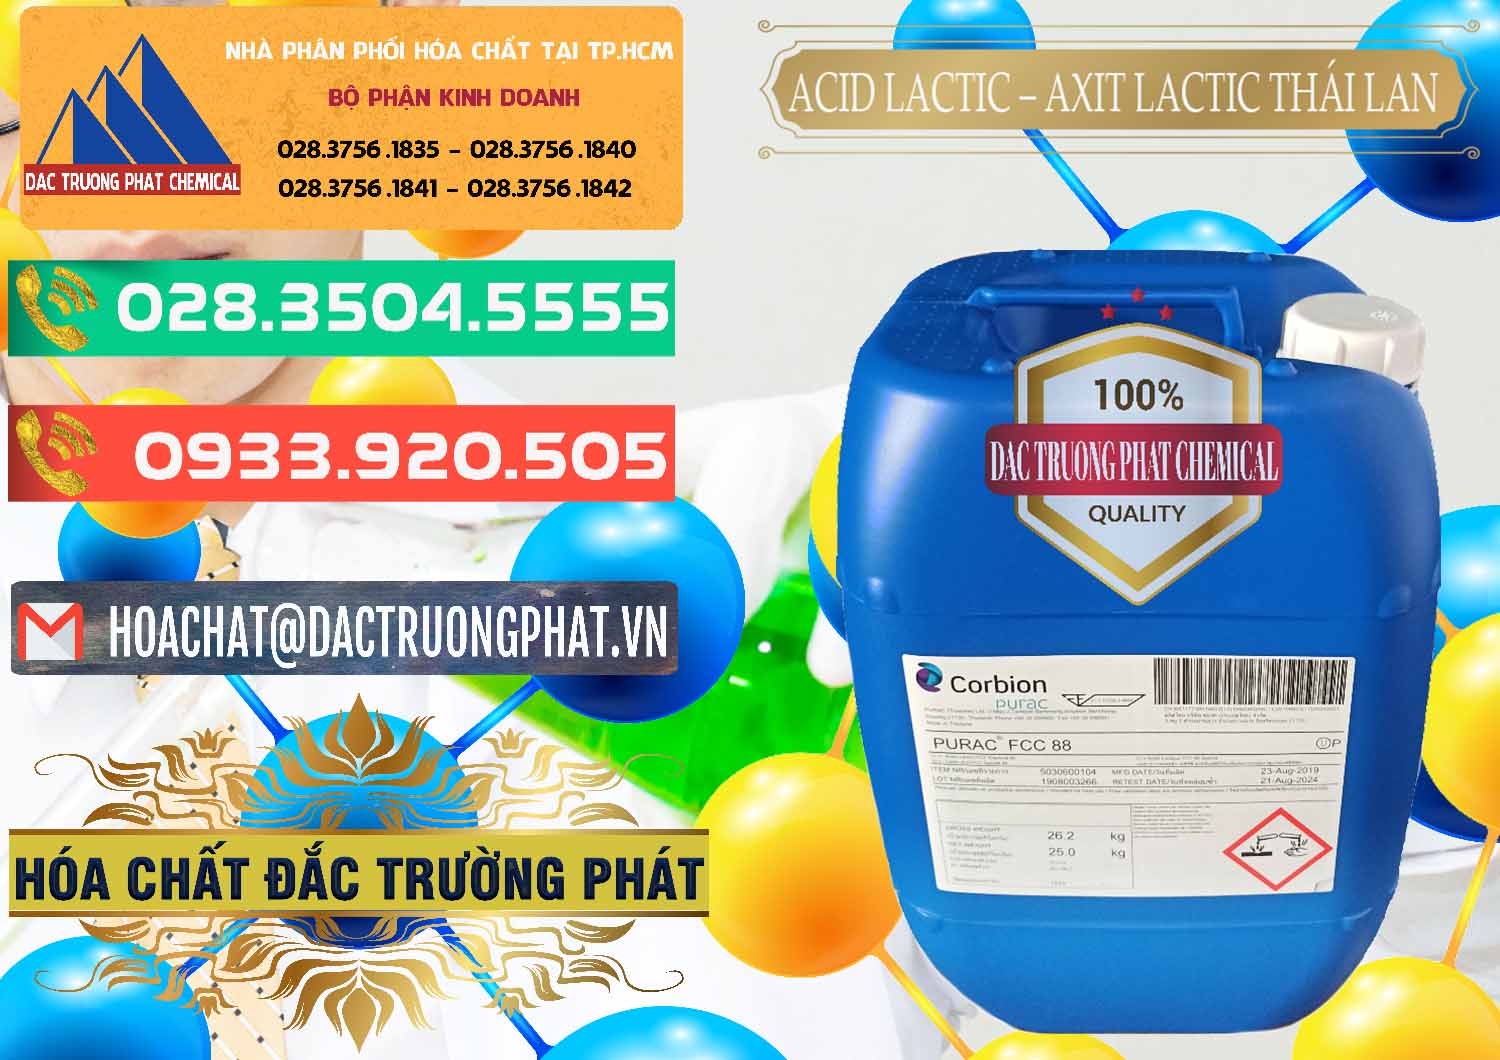 Cty cung cấp & bán Acid Lactic – Axit Lactic Thái Lan Purac FCC 88 - 0012 - Chuyên phân phối & cung cấp hóa chất tại TP.HCM - congtyhoachat.com.vn